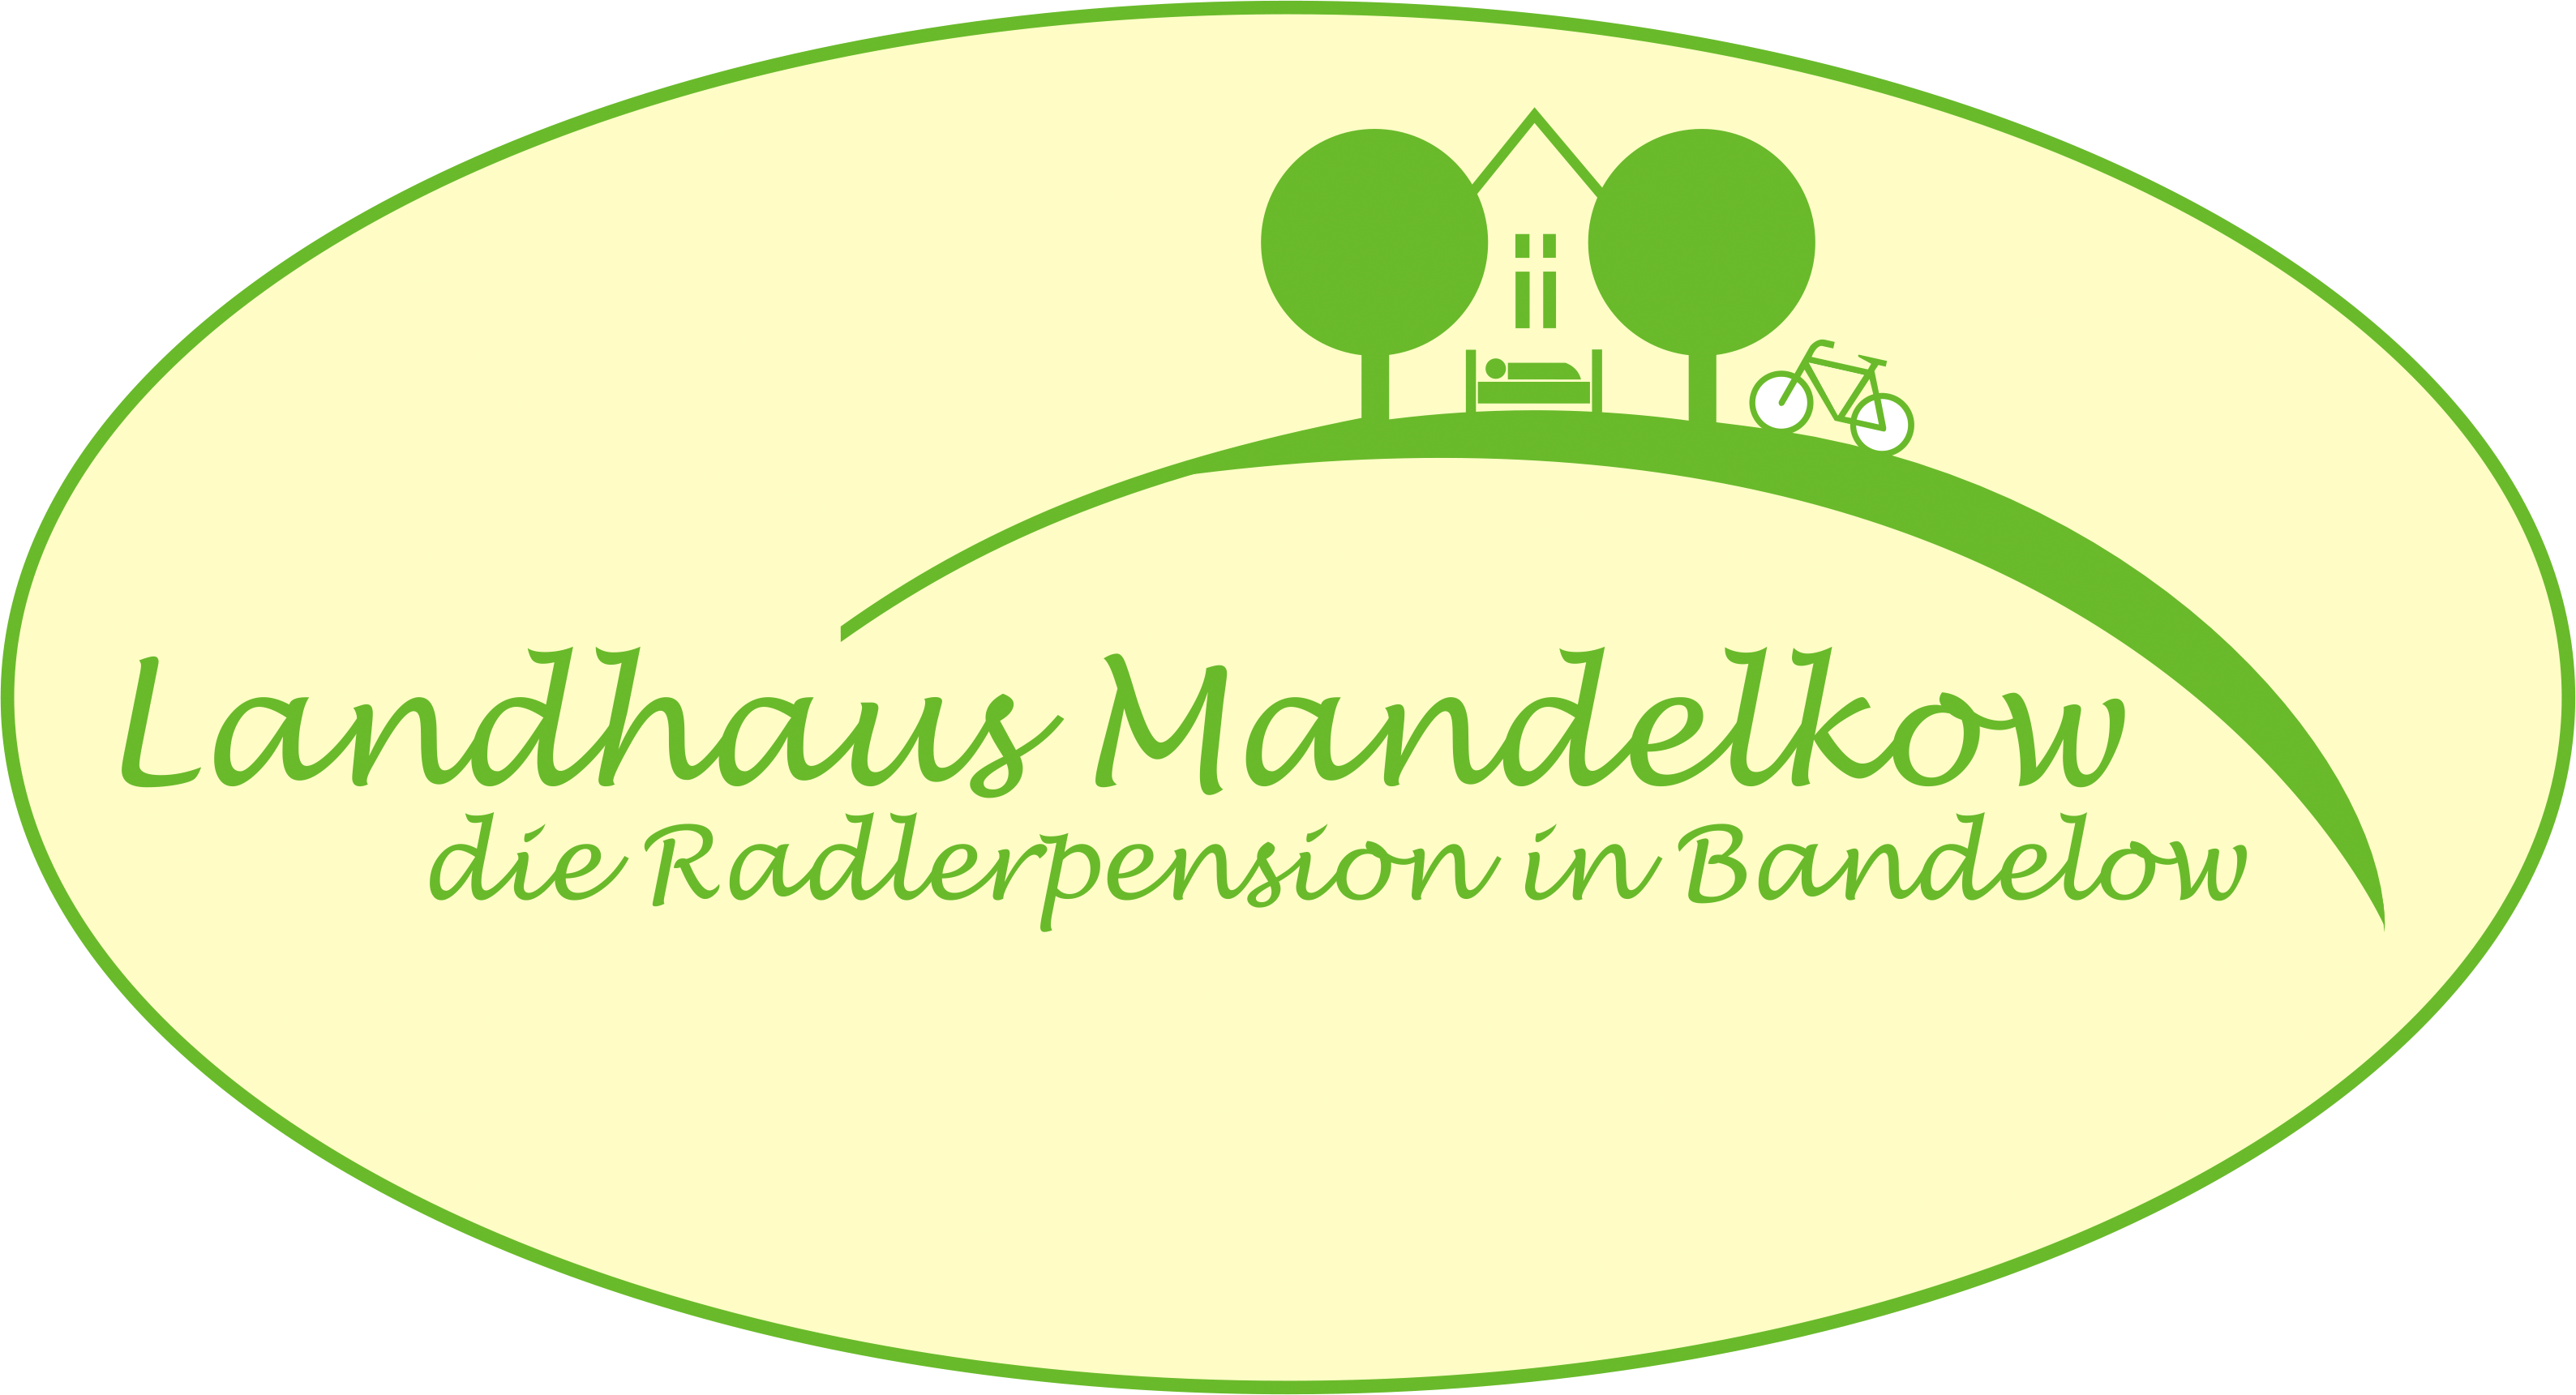 Landhaus Mandelkow